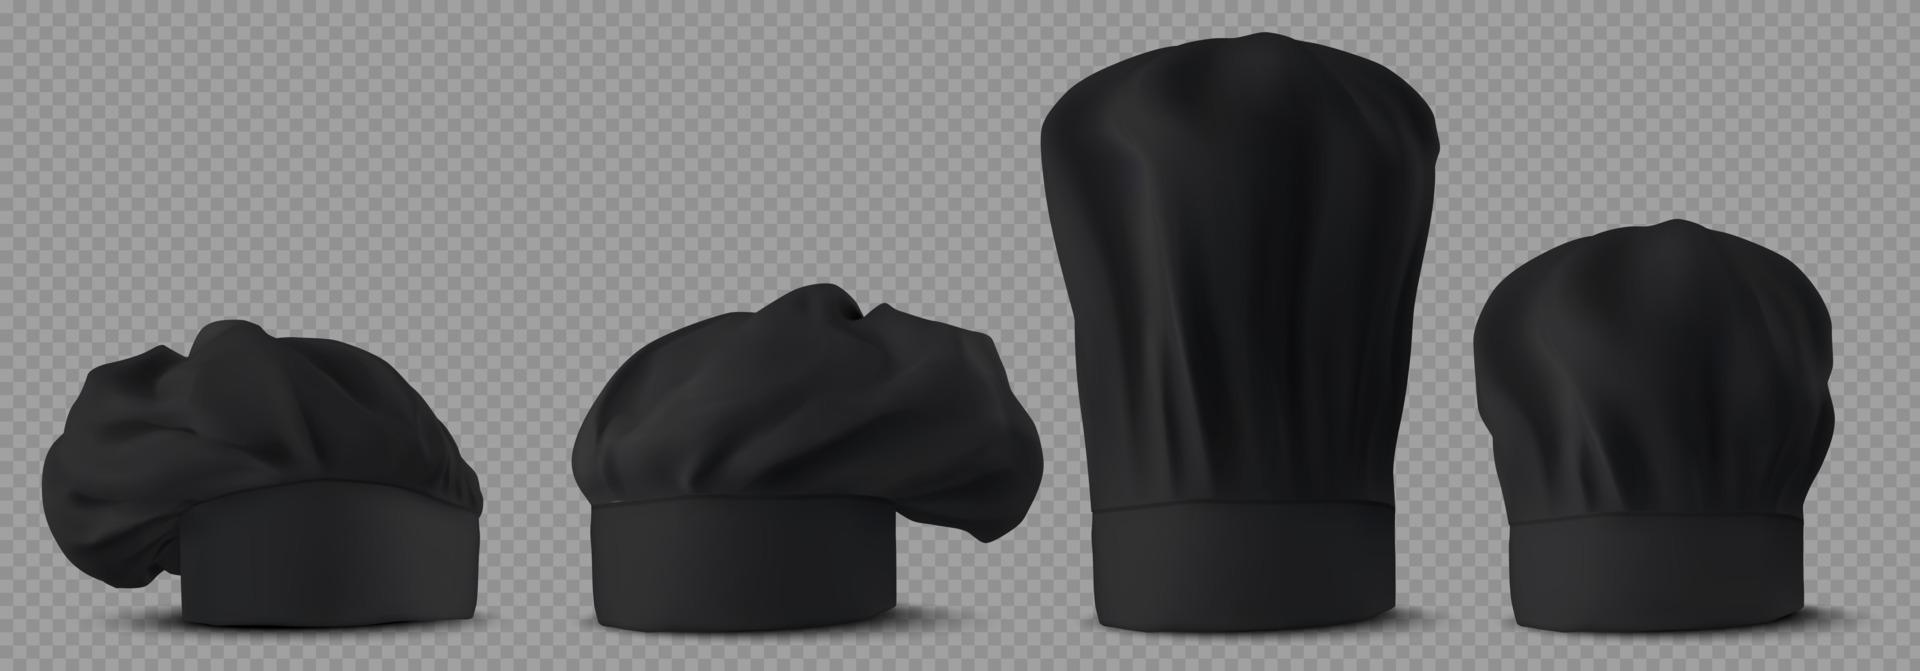 sombreros de chef negros, uniforme de cocina en la cocina del café vector